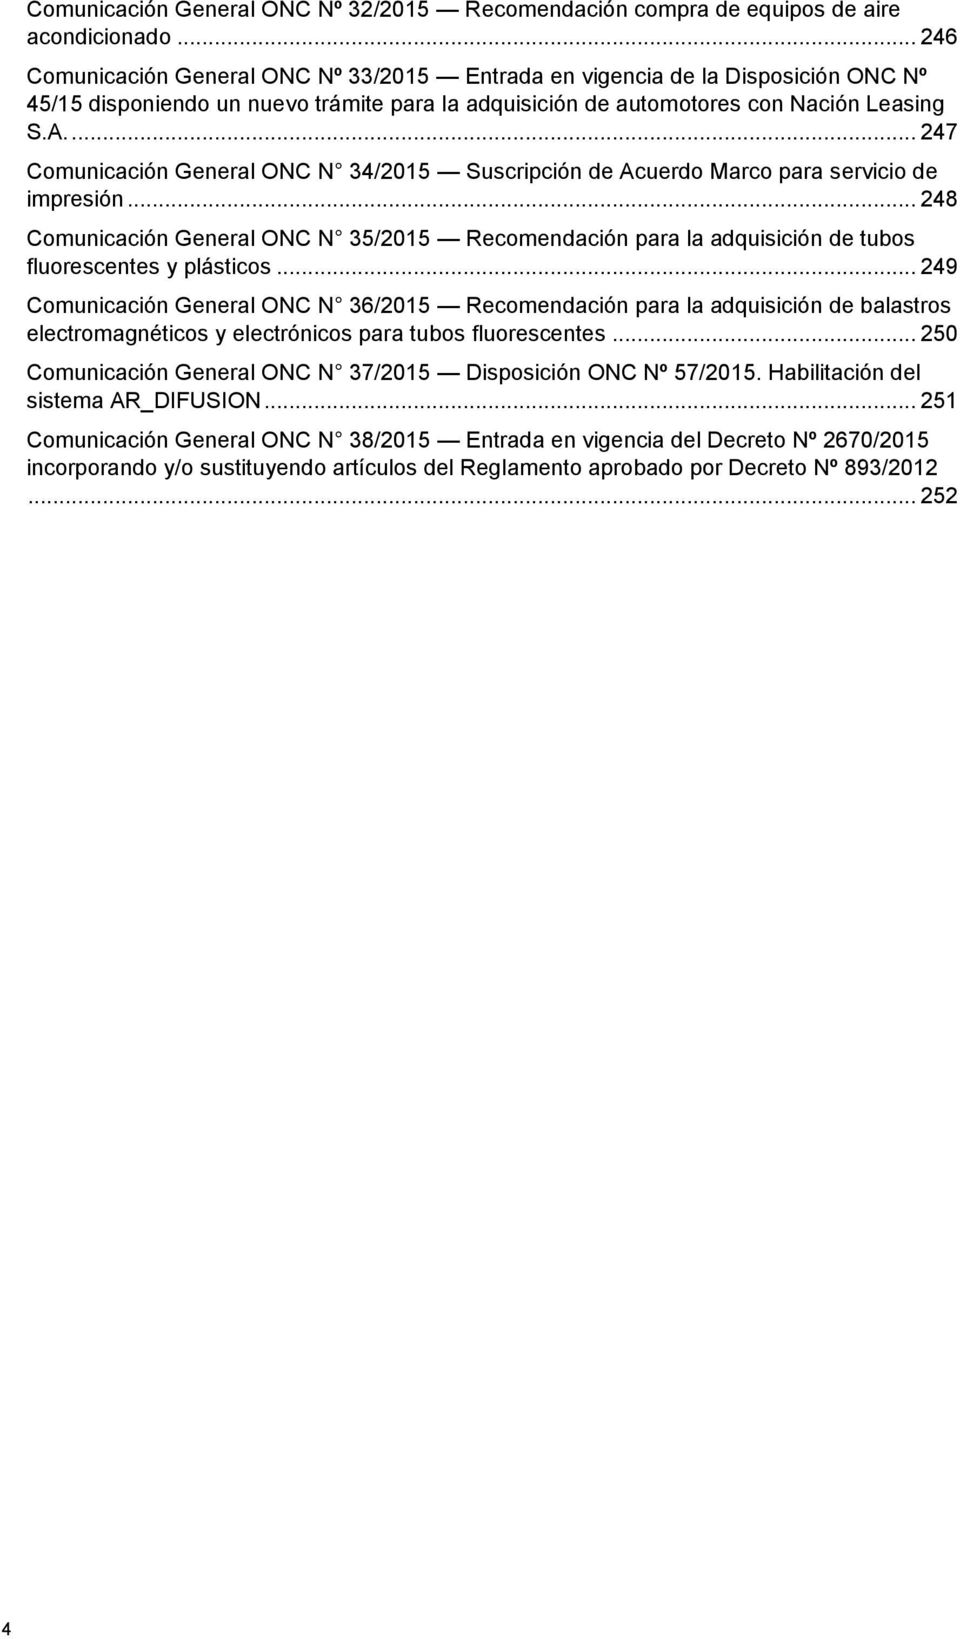 ... 247 Comunicación General ONC N 34/2015 Suscripción de Acuerdo Marco para servicio de impresión.